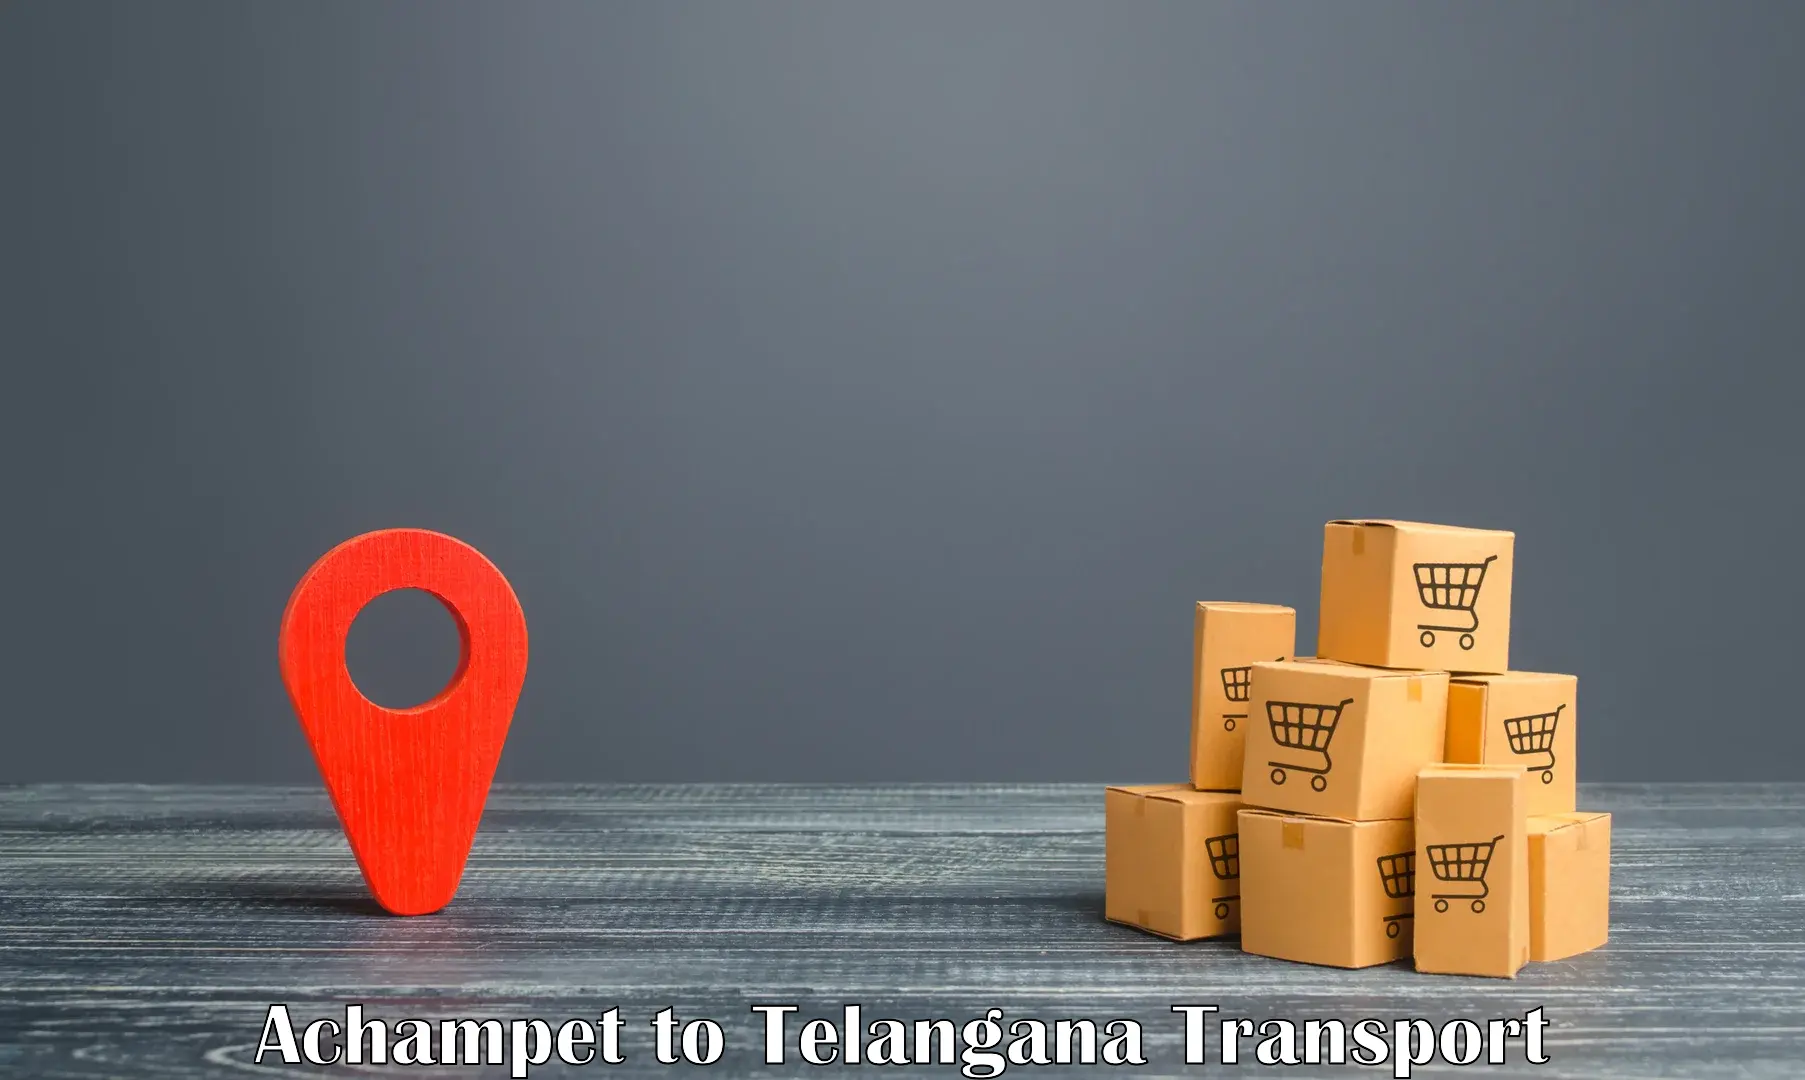 Online transport service Achampet to Bijinapalle